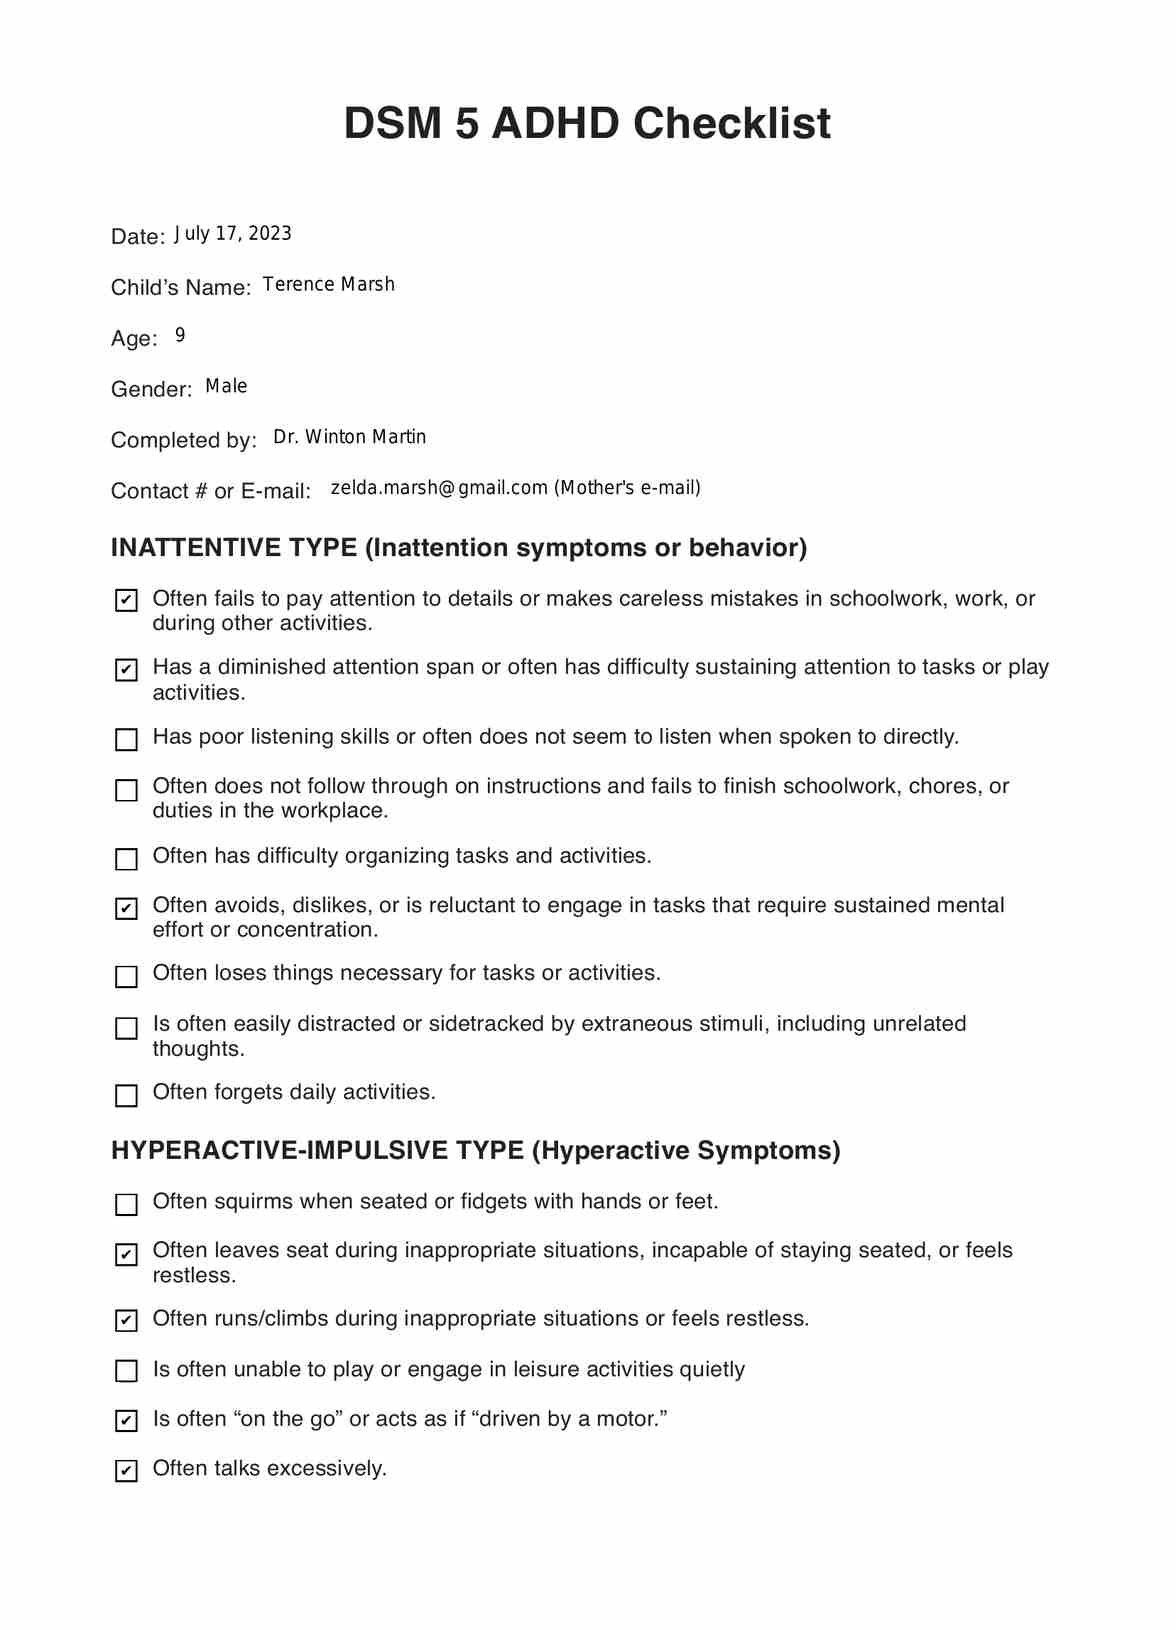 DSM 5 ADHD Checklist PDF Example